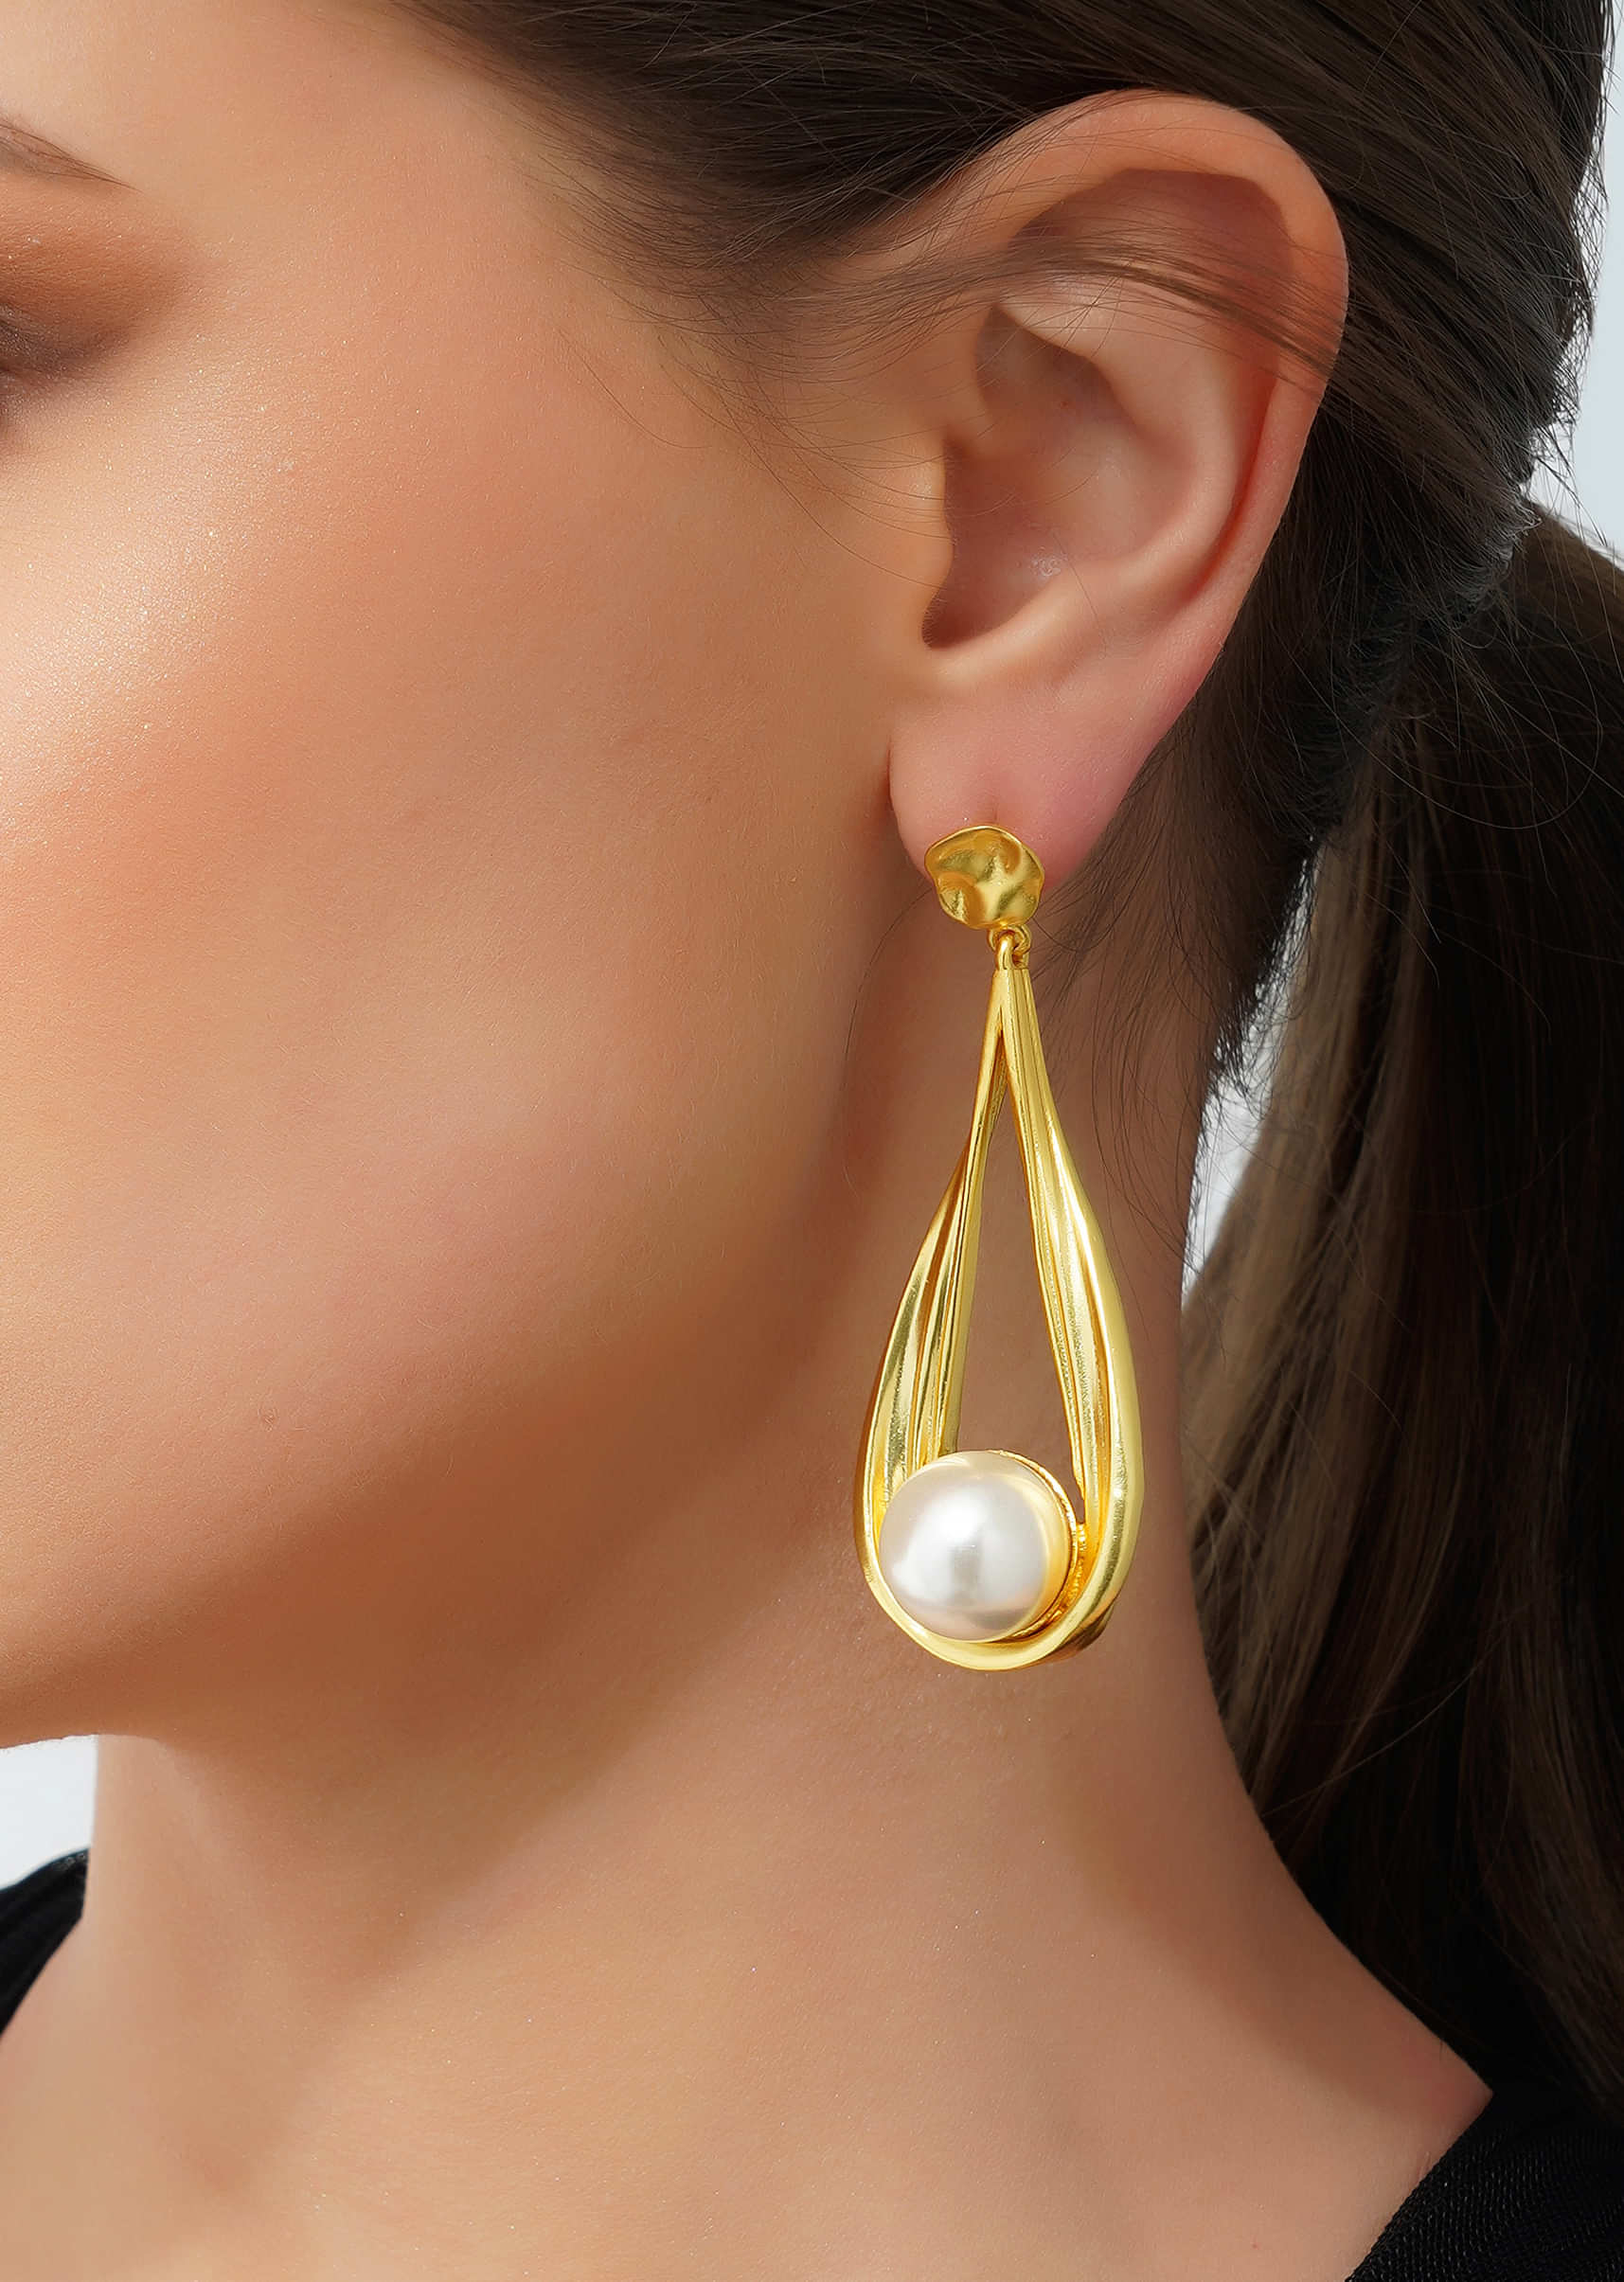 Gold 22K Dangler Earrings With White Shell Pearl